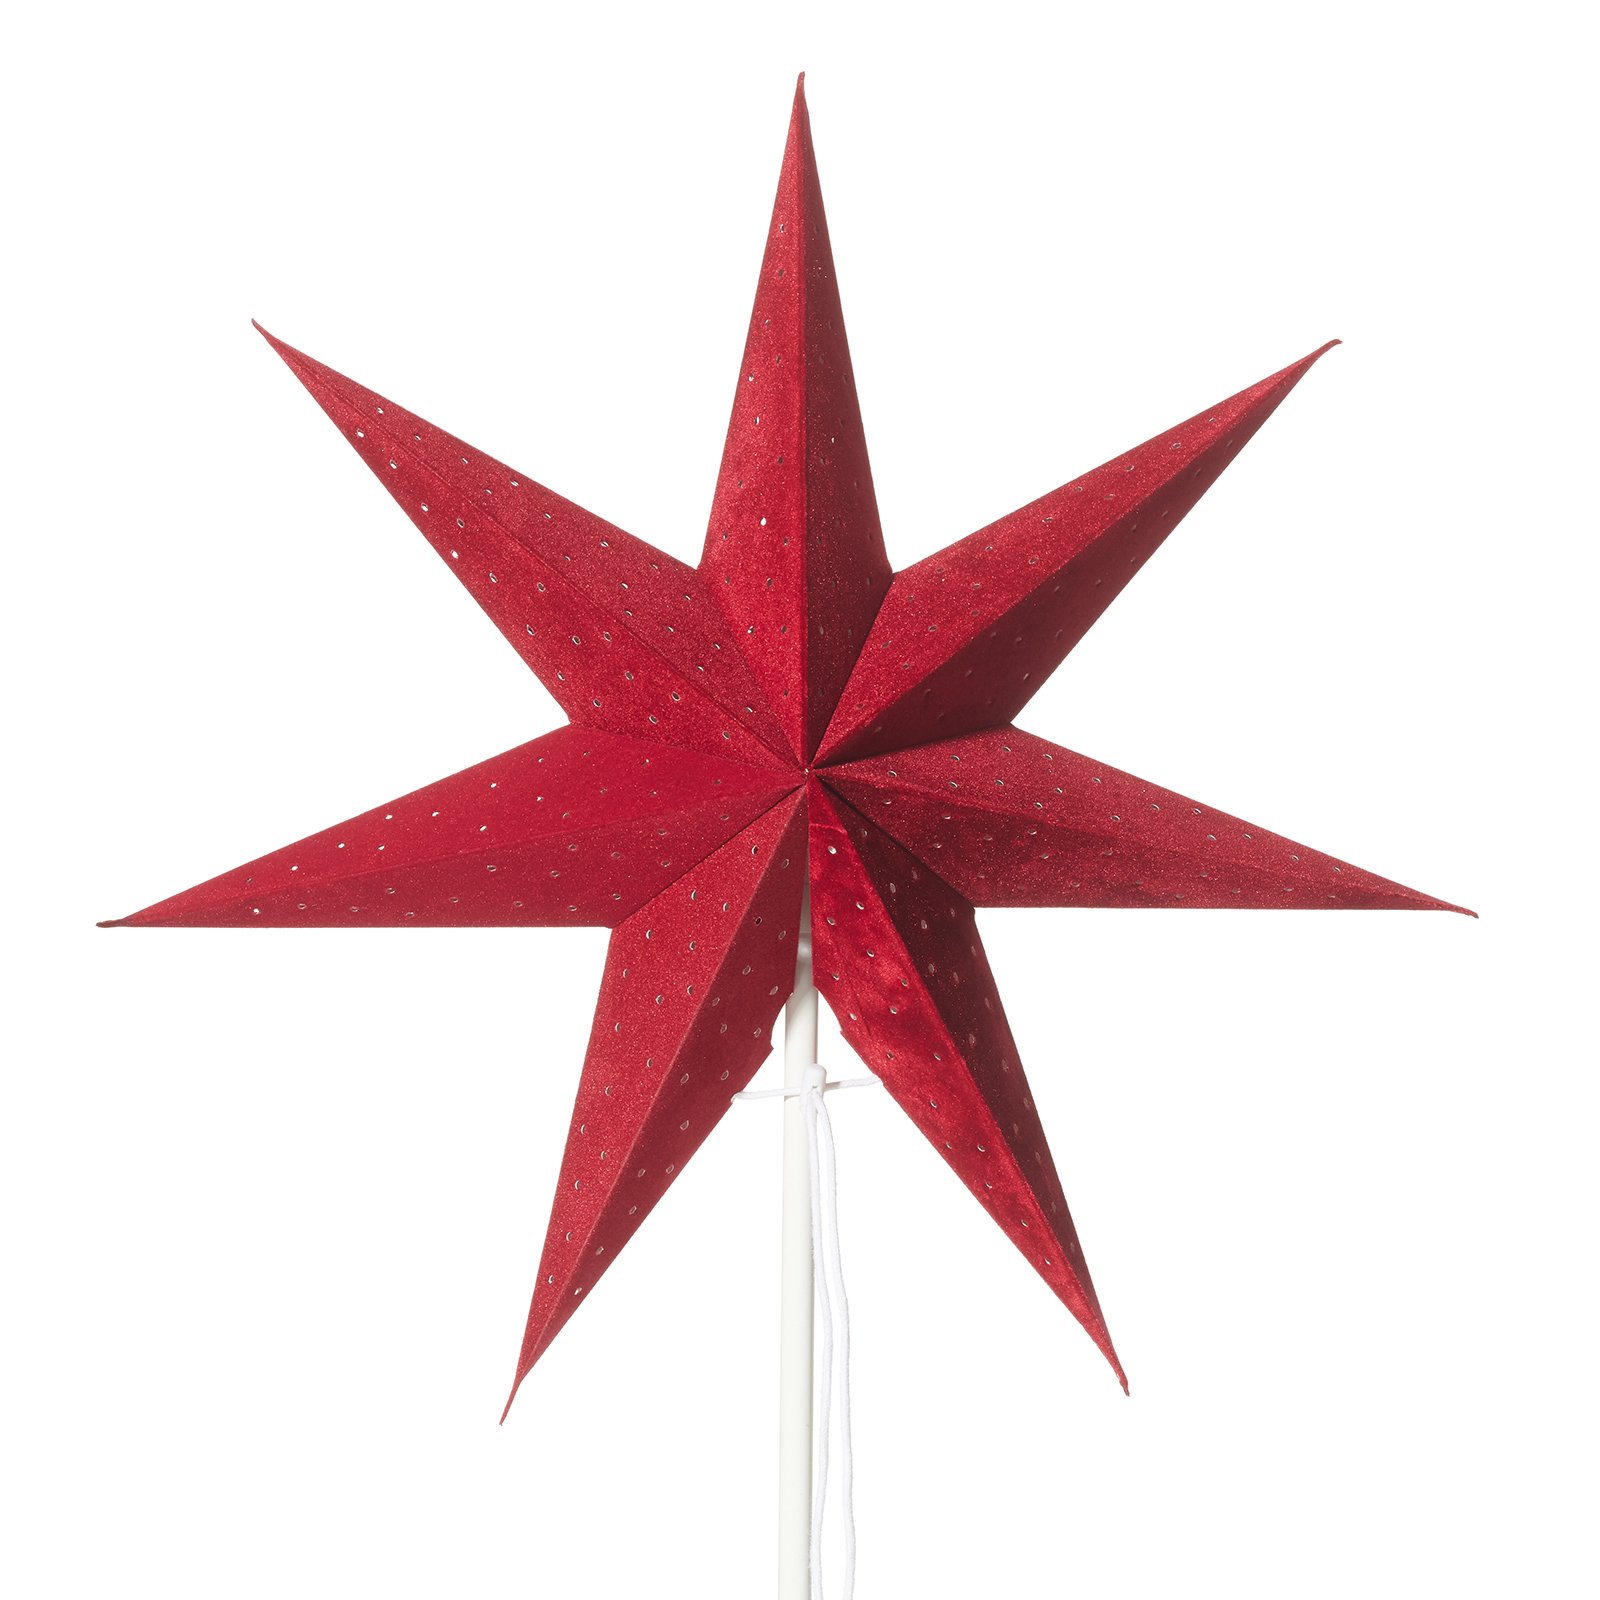 Clara stjerne, fløjlslook, rød stjerne, hvid fod